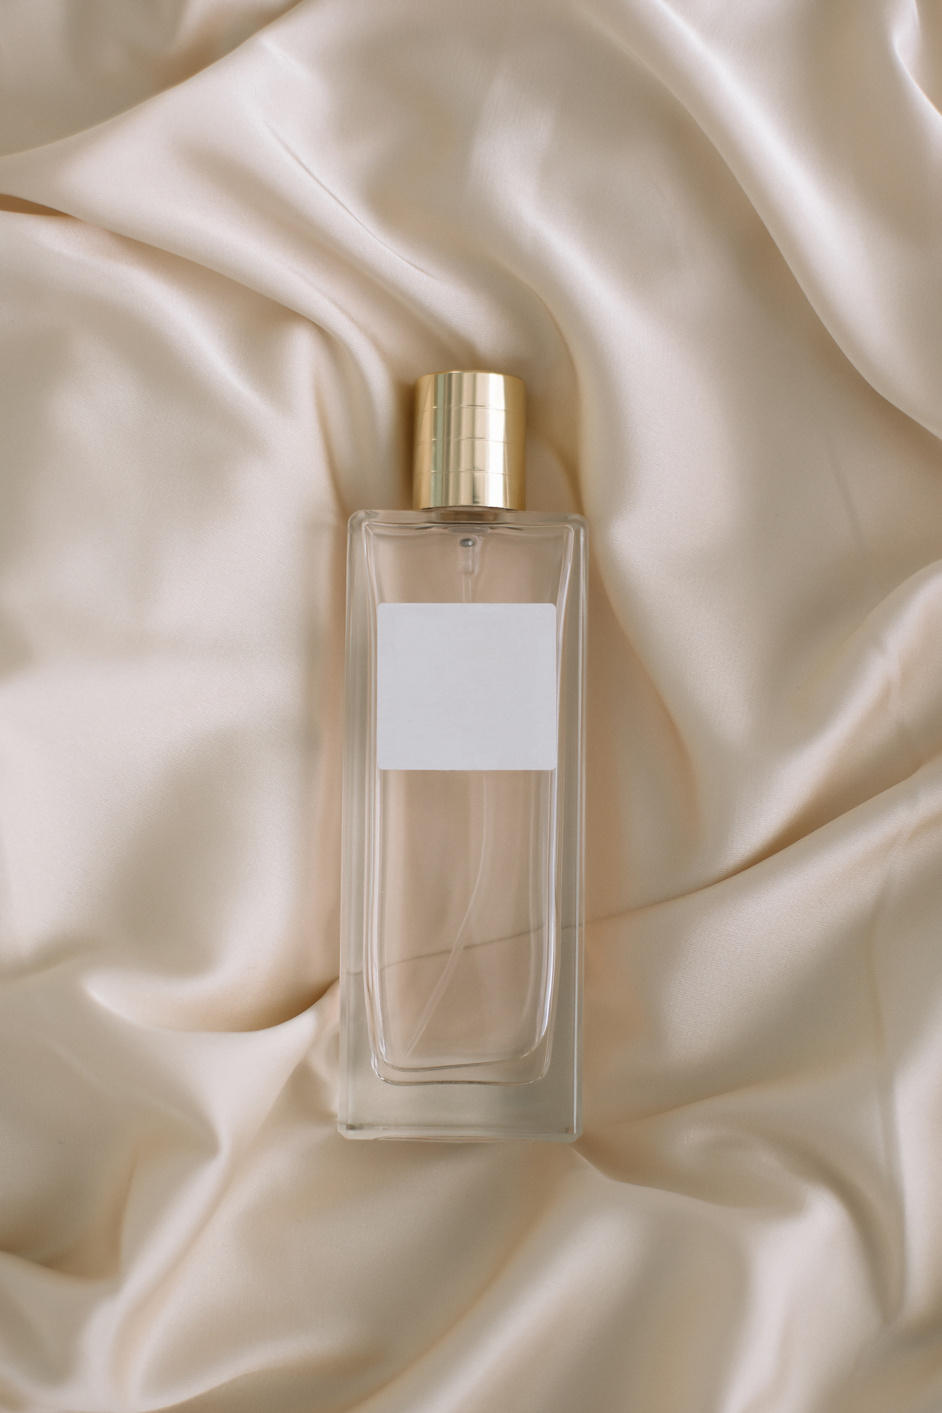 Bottle of Perfume on Satin